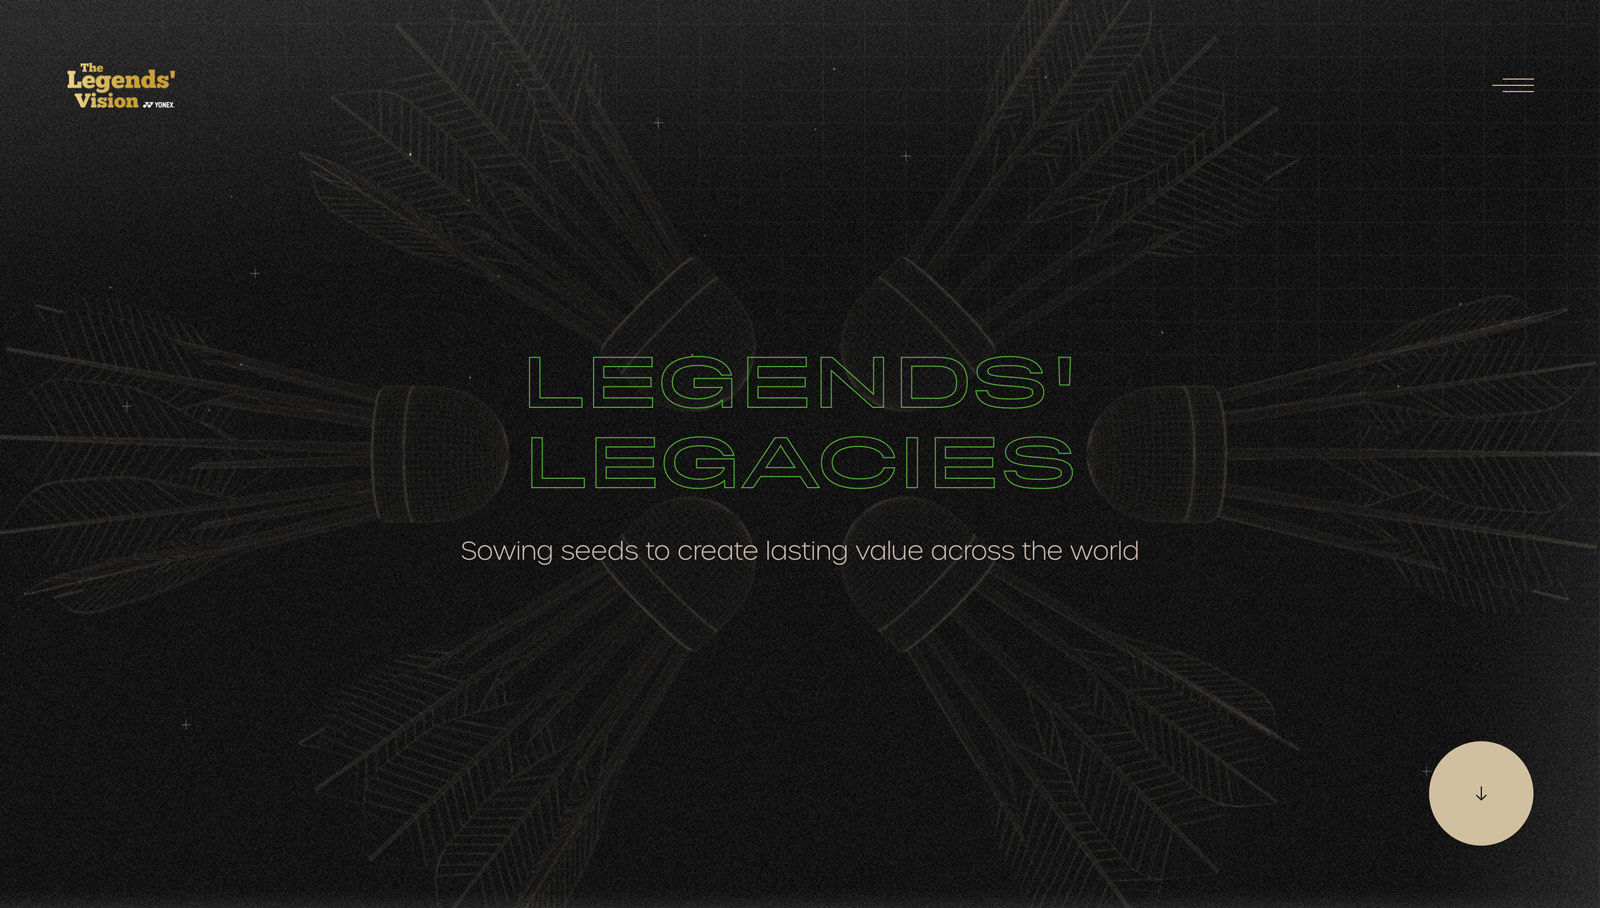 Legends-vision-16